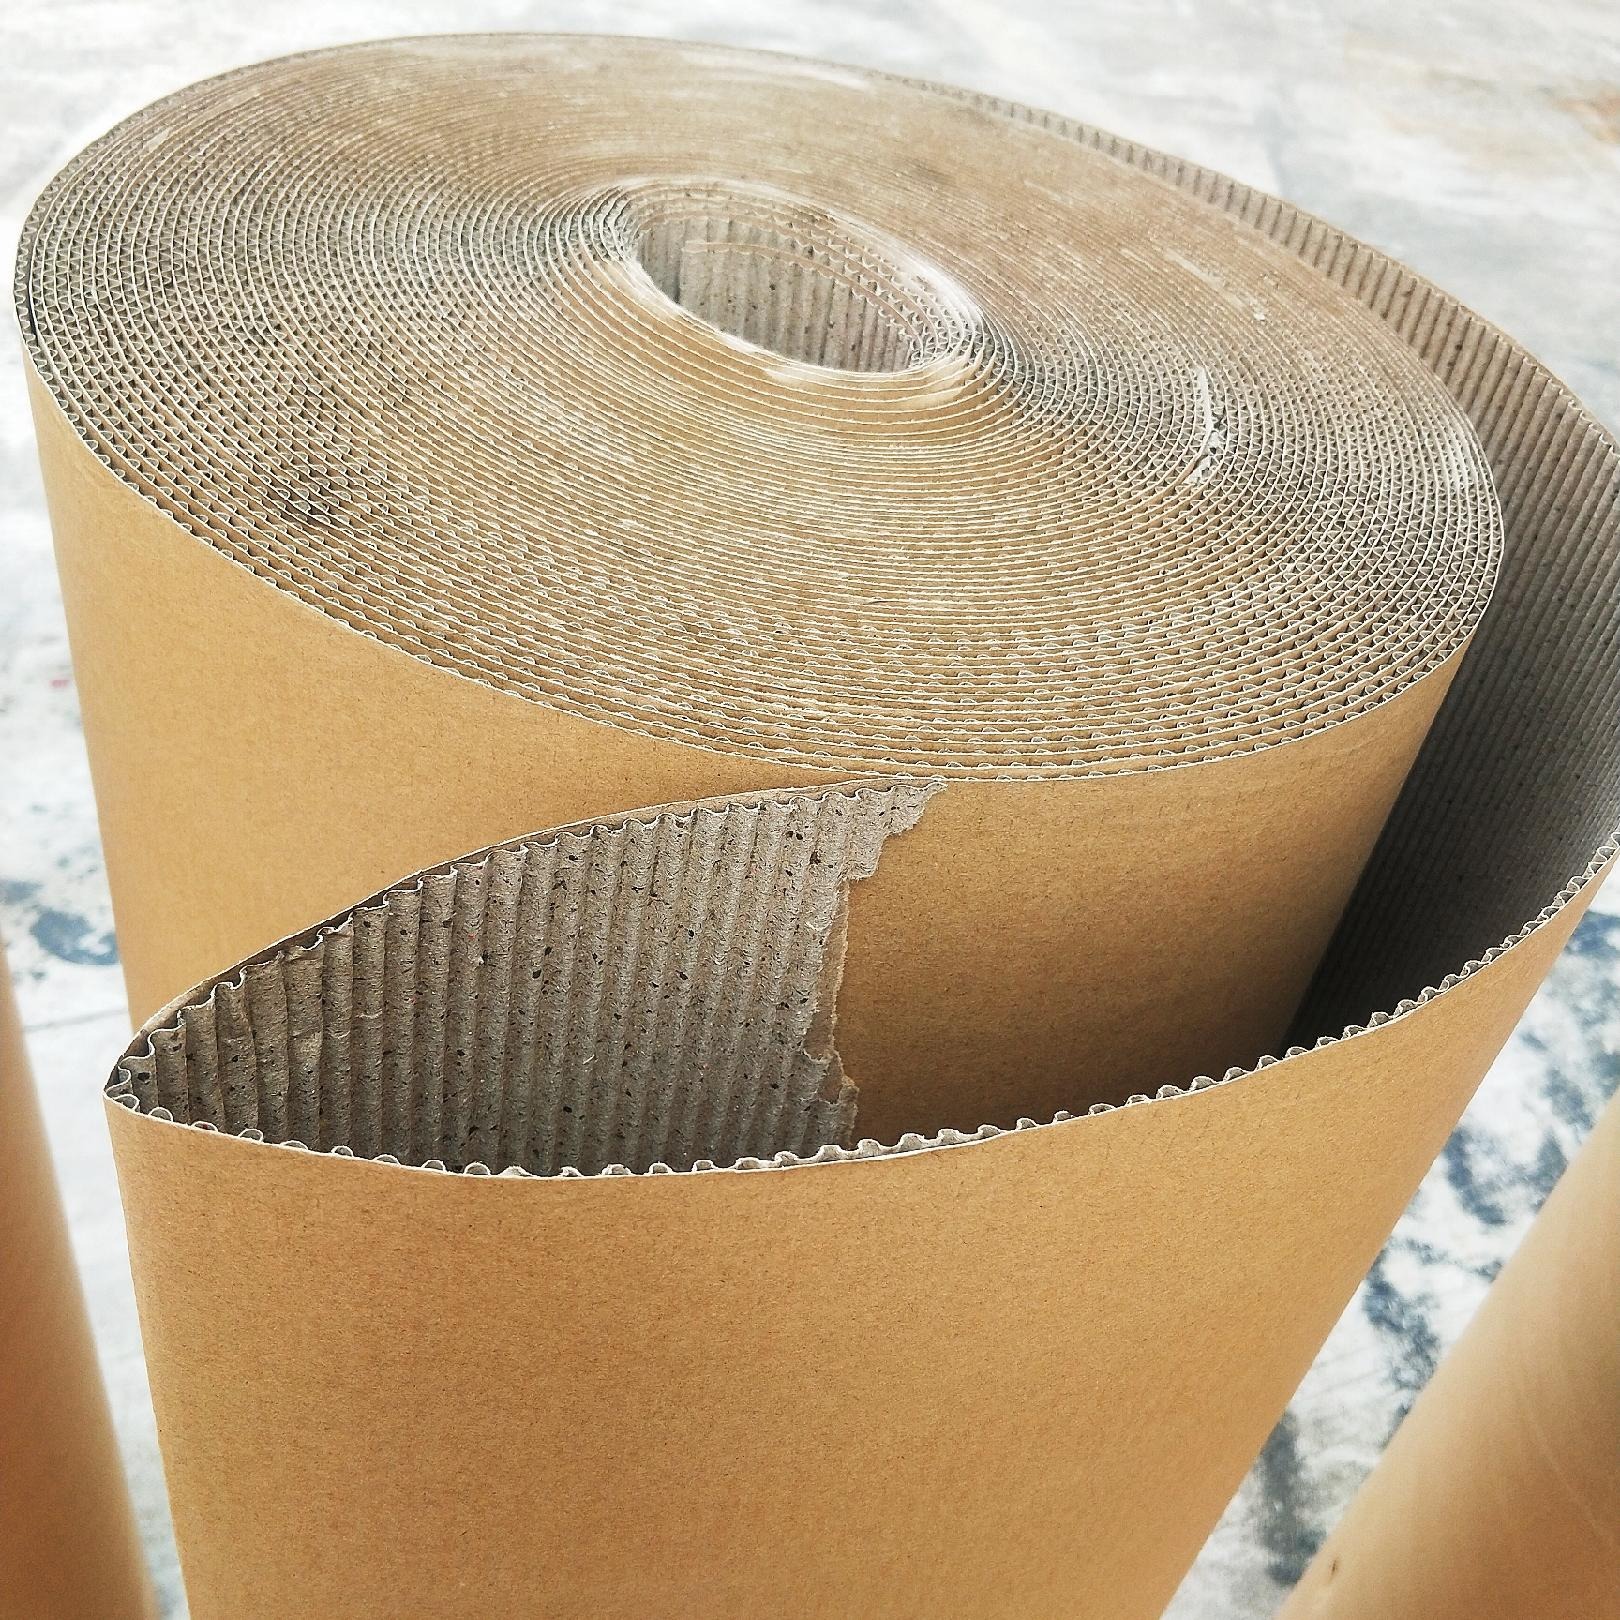 展飞牌瓦楞纸  瓦楞纸生产厂家双层见坑纸  1.4米包装纸厂家 1.4米打包纸 瓦楞卷纸1250